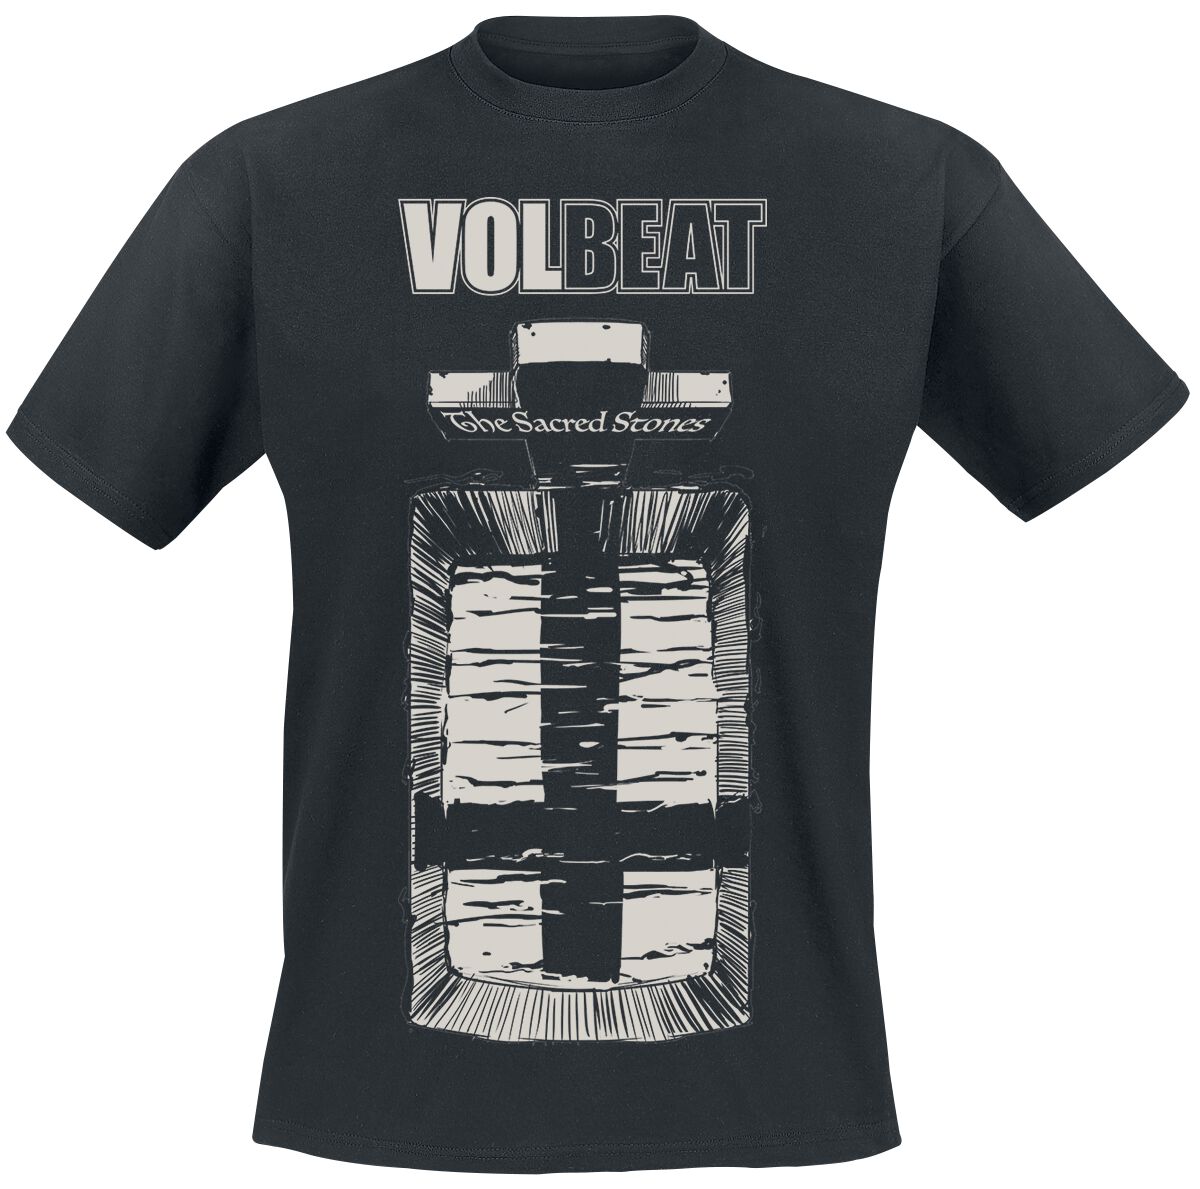 Volbeat T-Shirt - The Scared Stones - S bis XXL - für Männer - Größe L - schwarz  - EMP exklusives Merchandise!